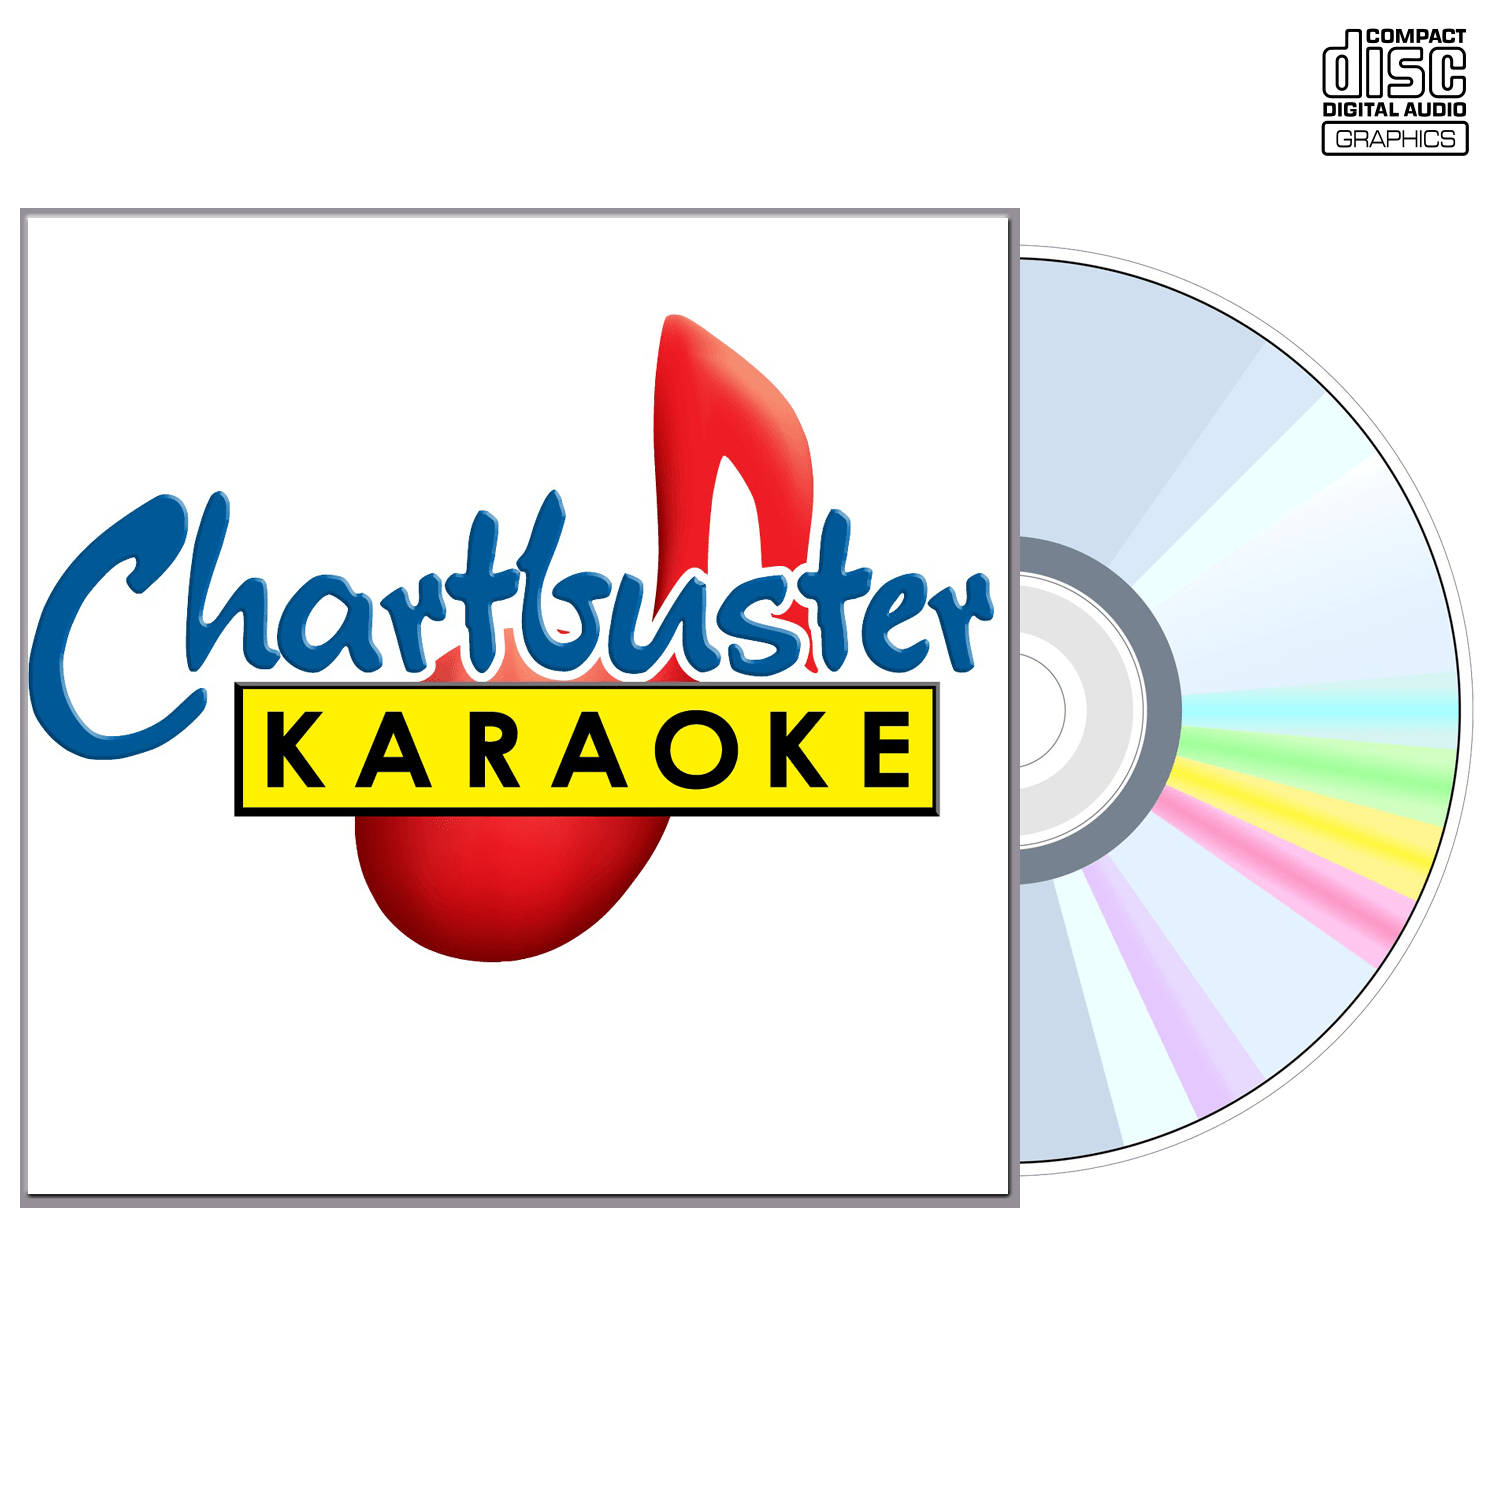 Amy Winehouse - CD+G - Chartbuster Karaoke - Karaoke Home Entertainment